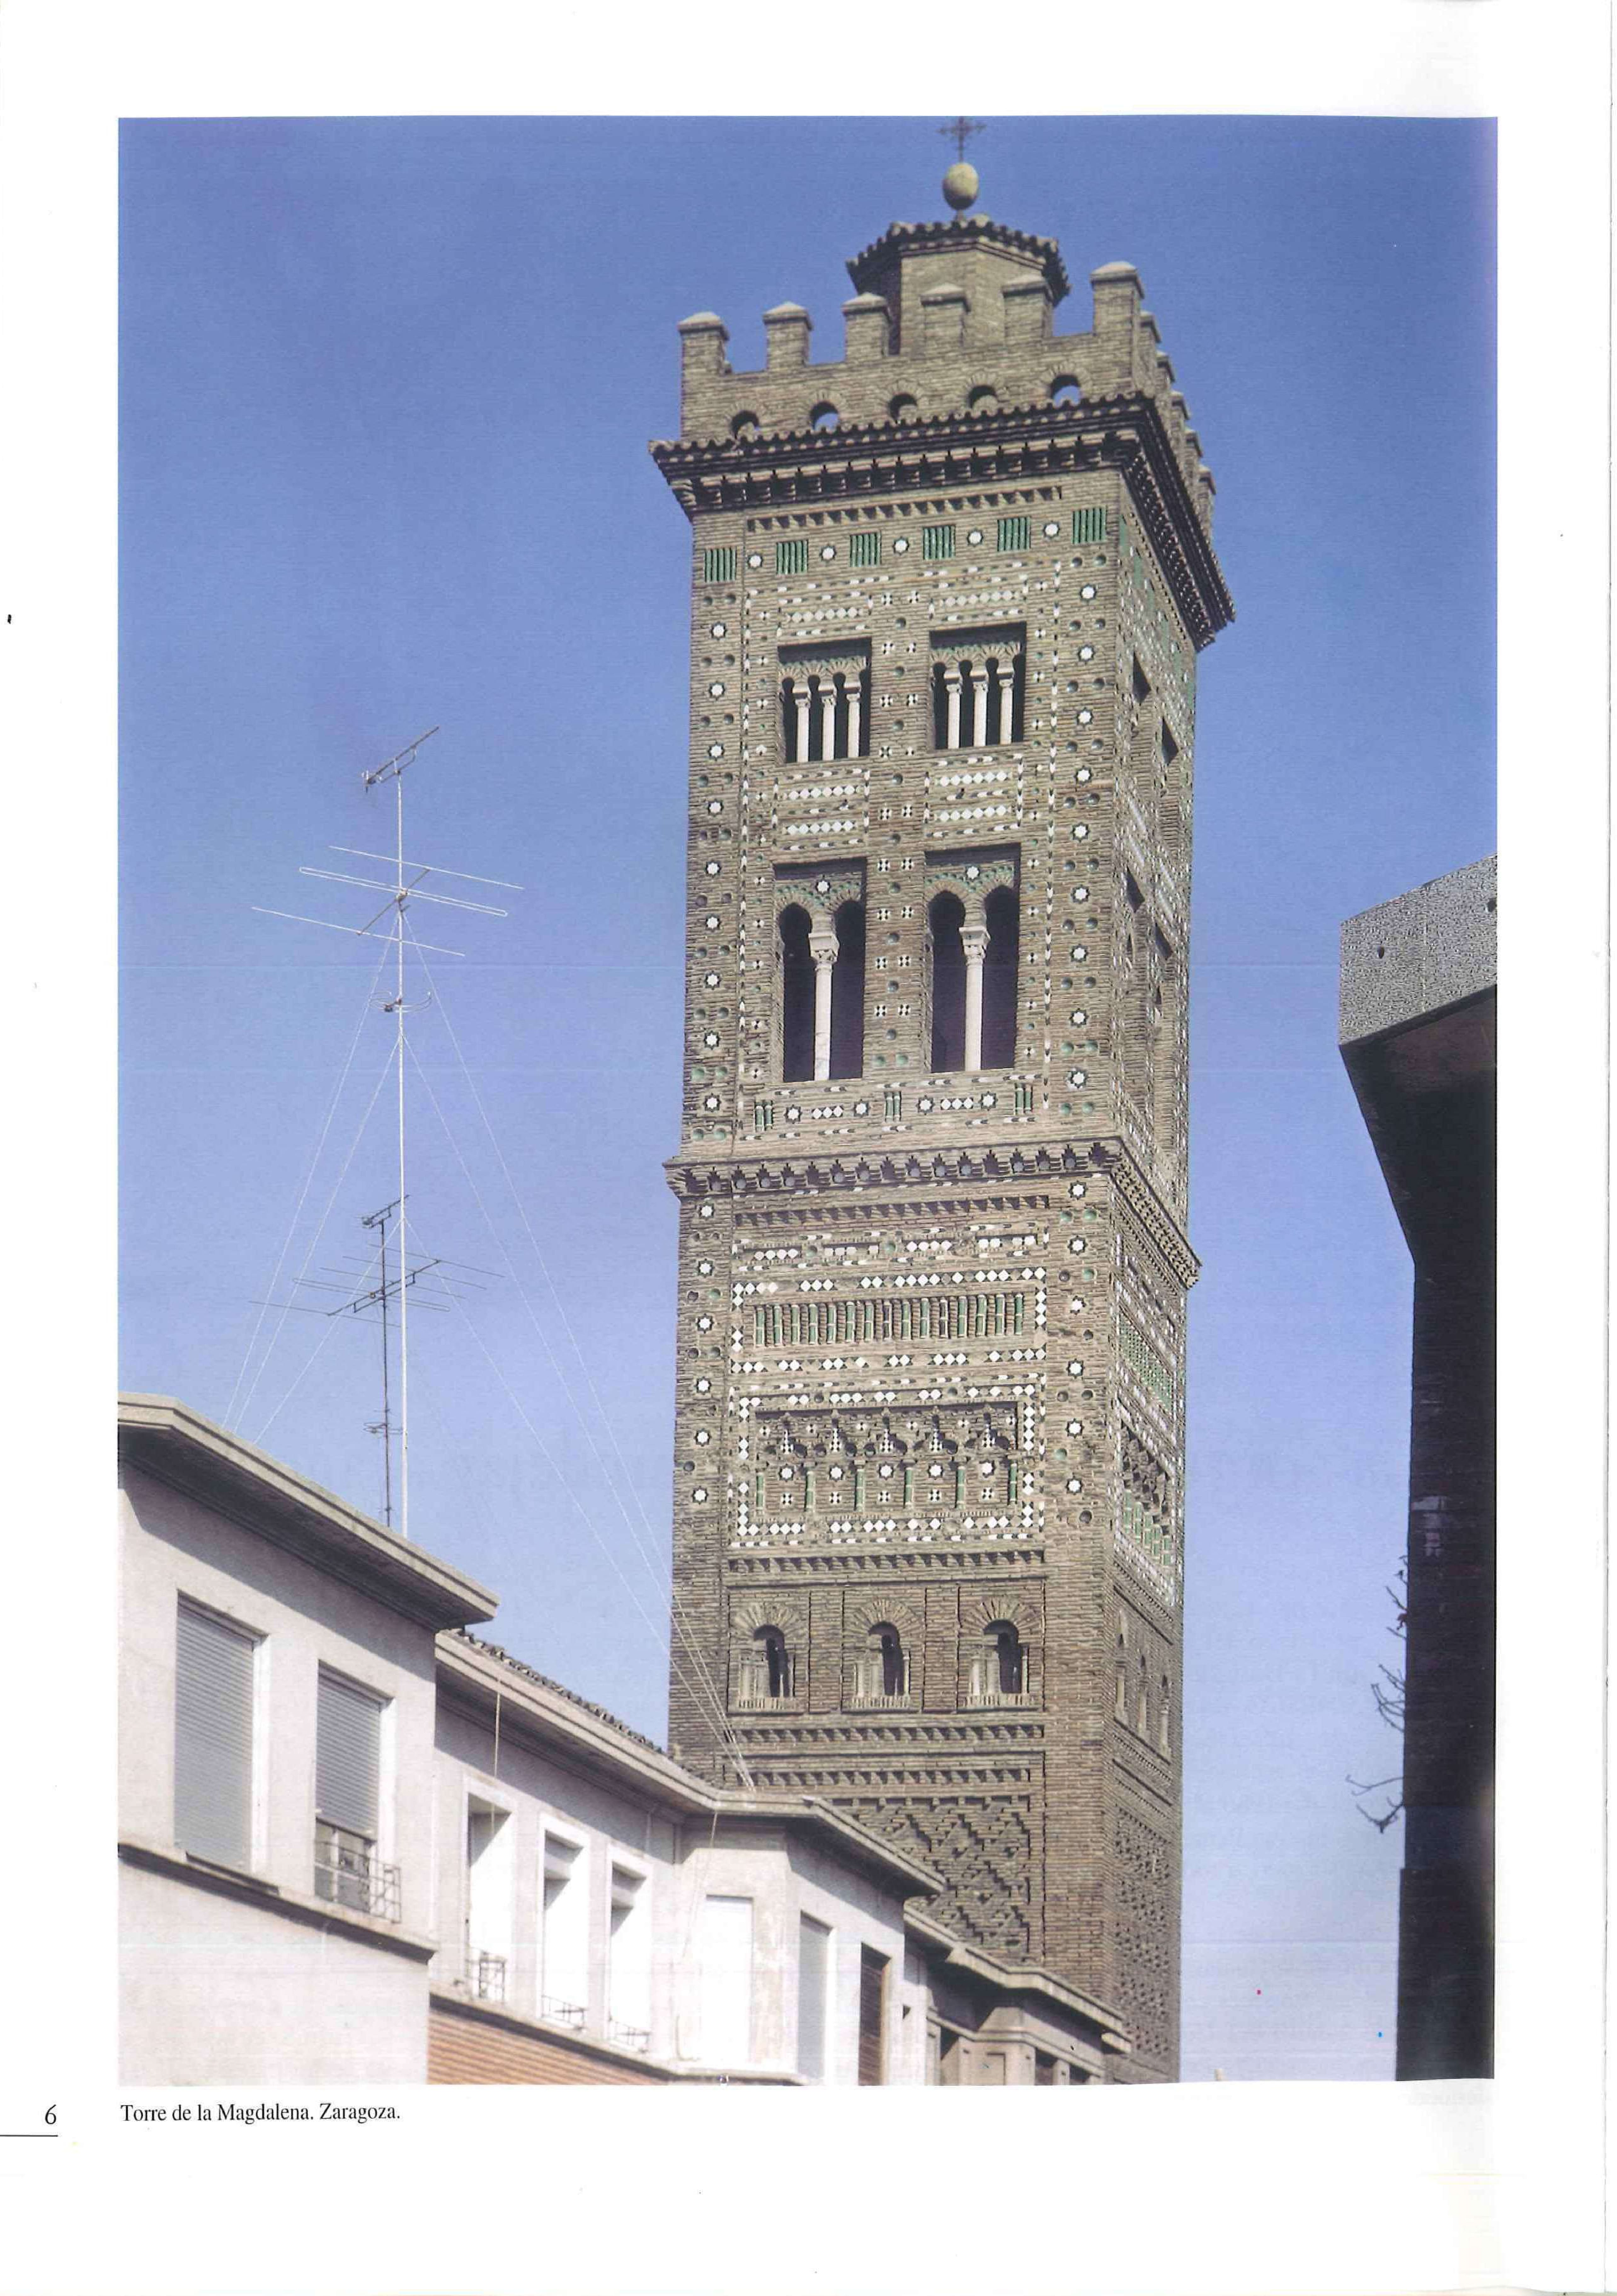 Fotografía de la torre de La Magdalena publicada en la revista de enero de 2002